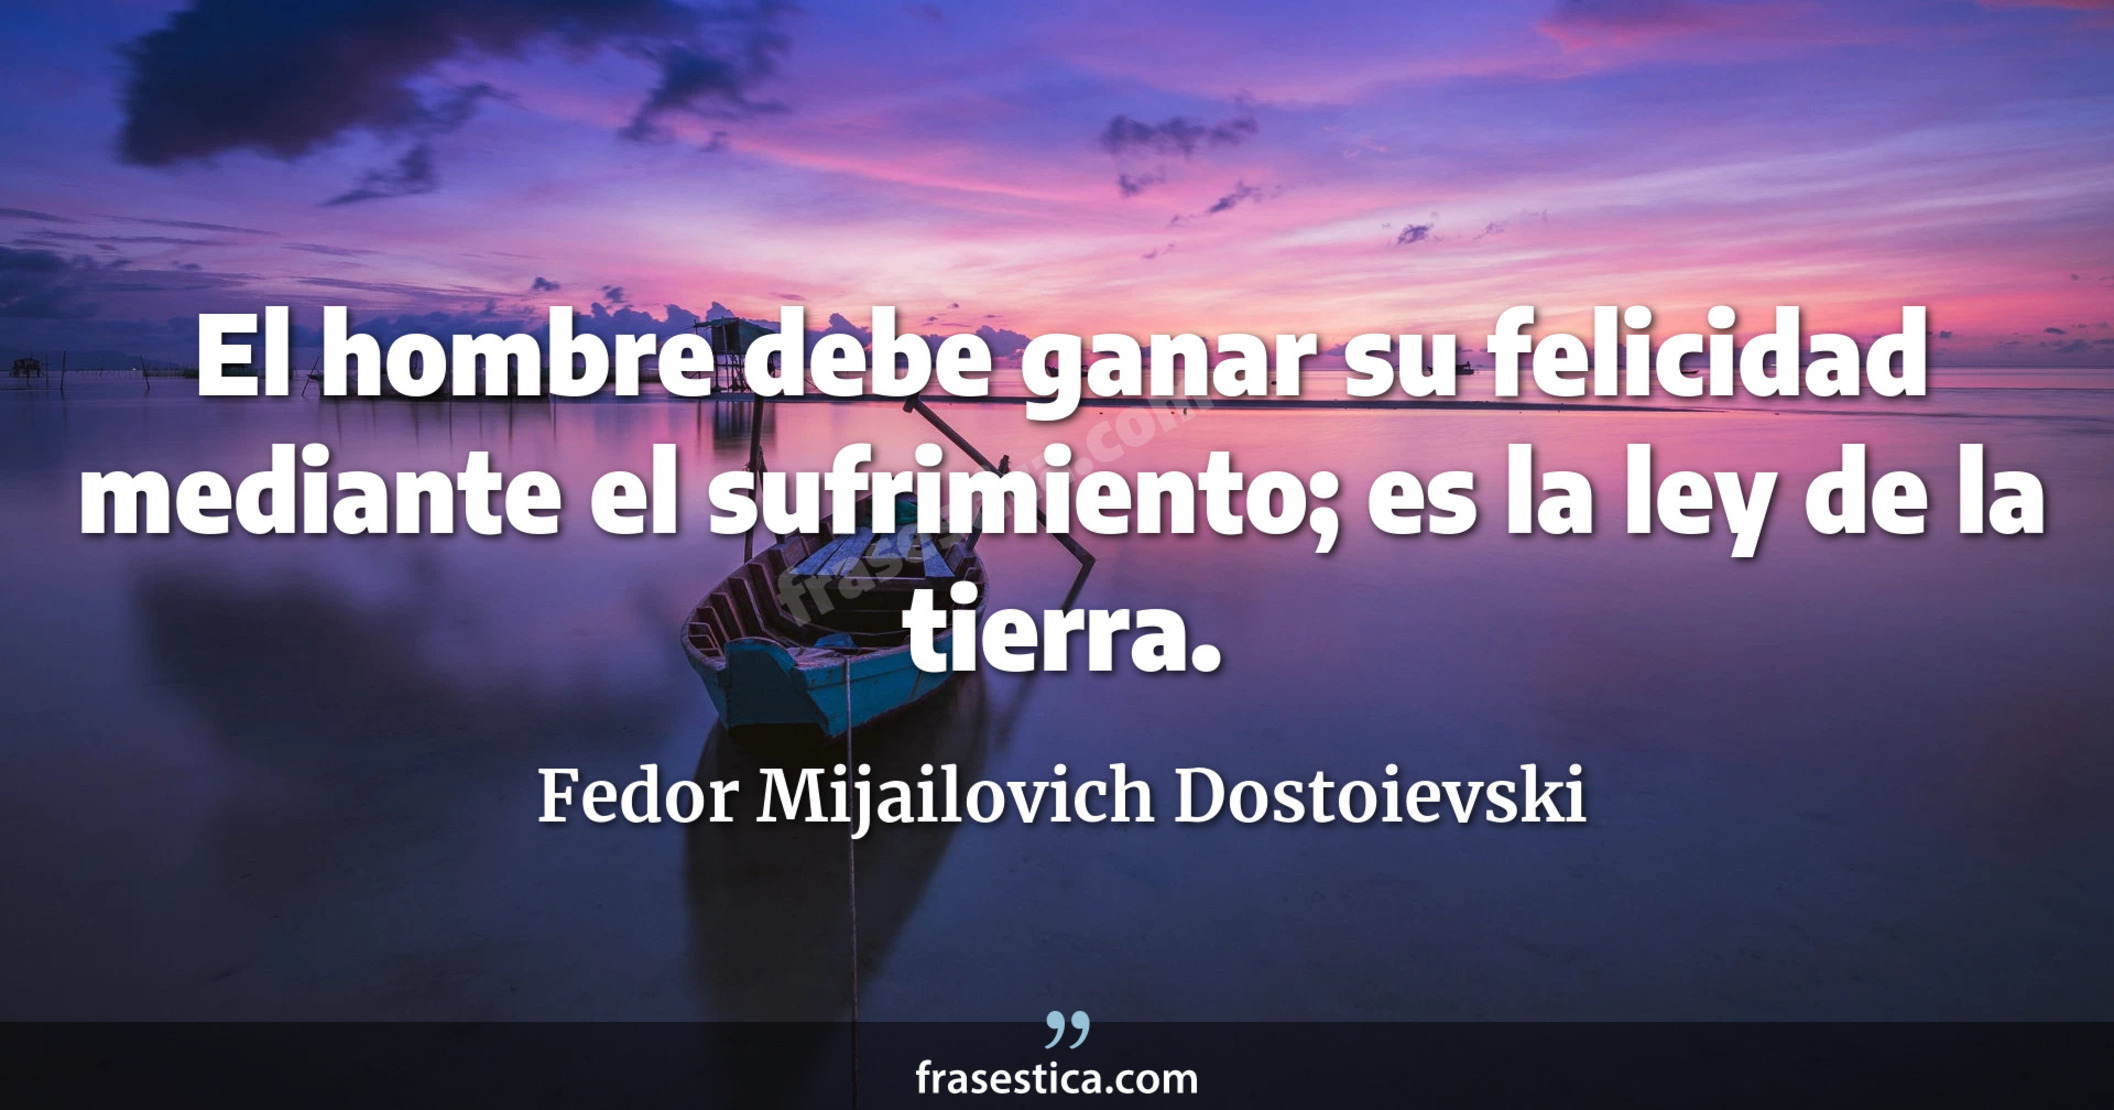 El hombre debe ganar su felicidad mediante el sufrimiento; es la ley de la tierra. - Fedor Mijailovich Dostoievski